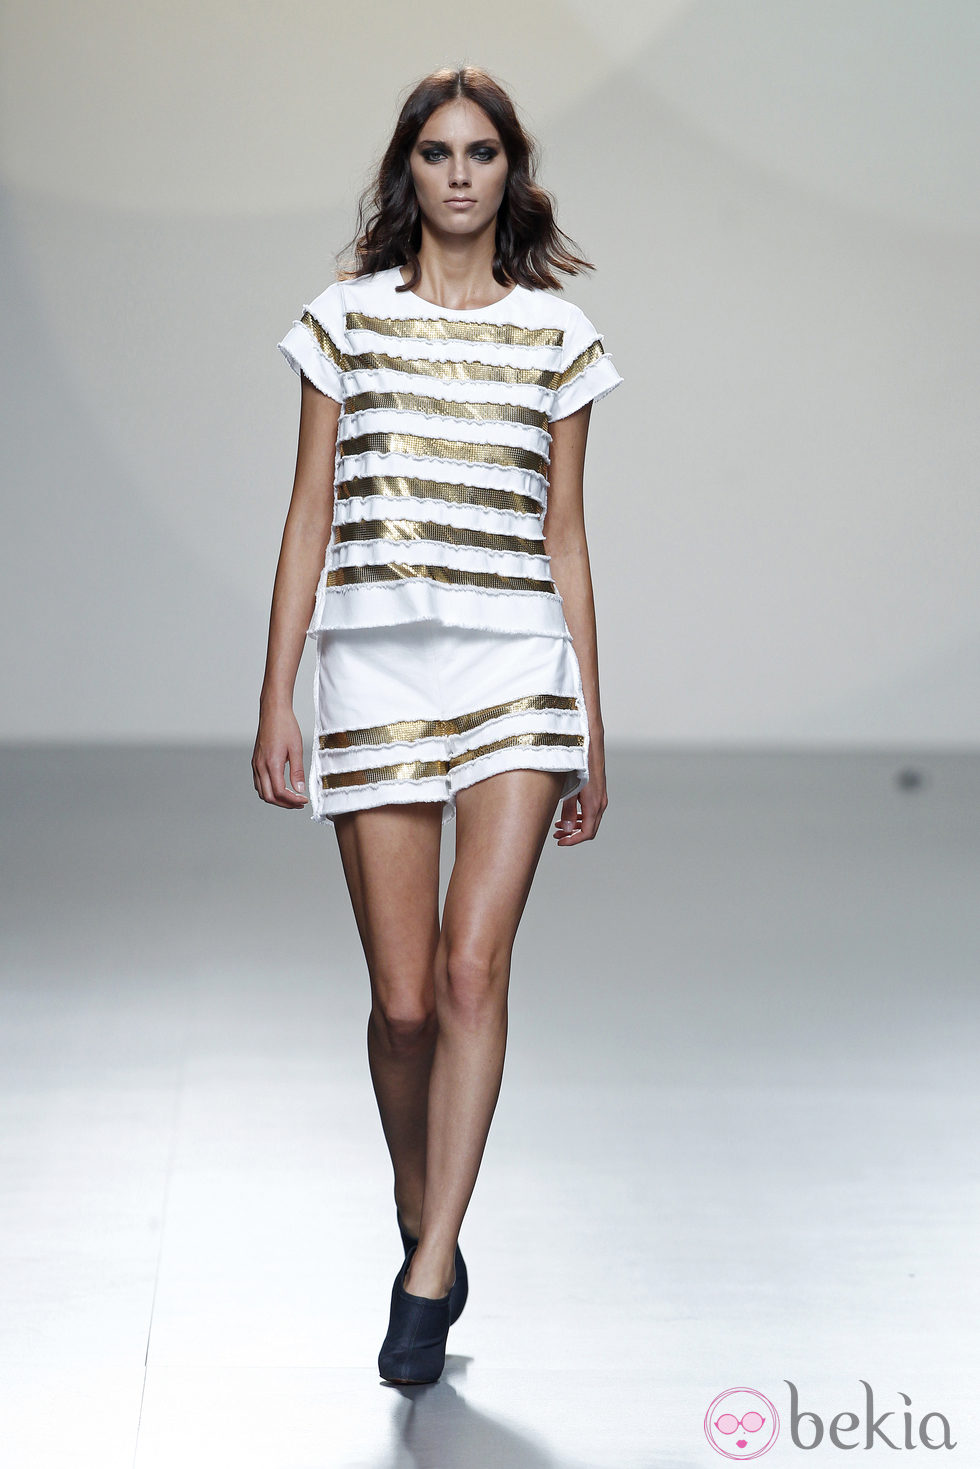 Falda y camiseta a rayas doradas de la colección primavera/verano 2014 de Teresa Helbig en Madrid Fashion Week